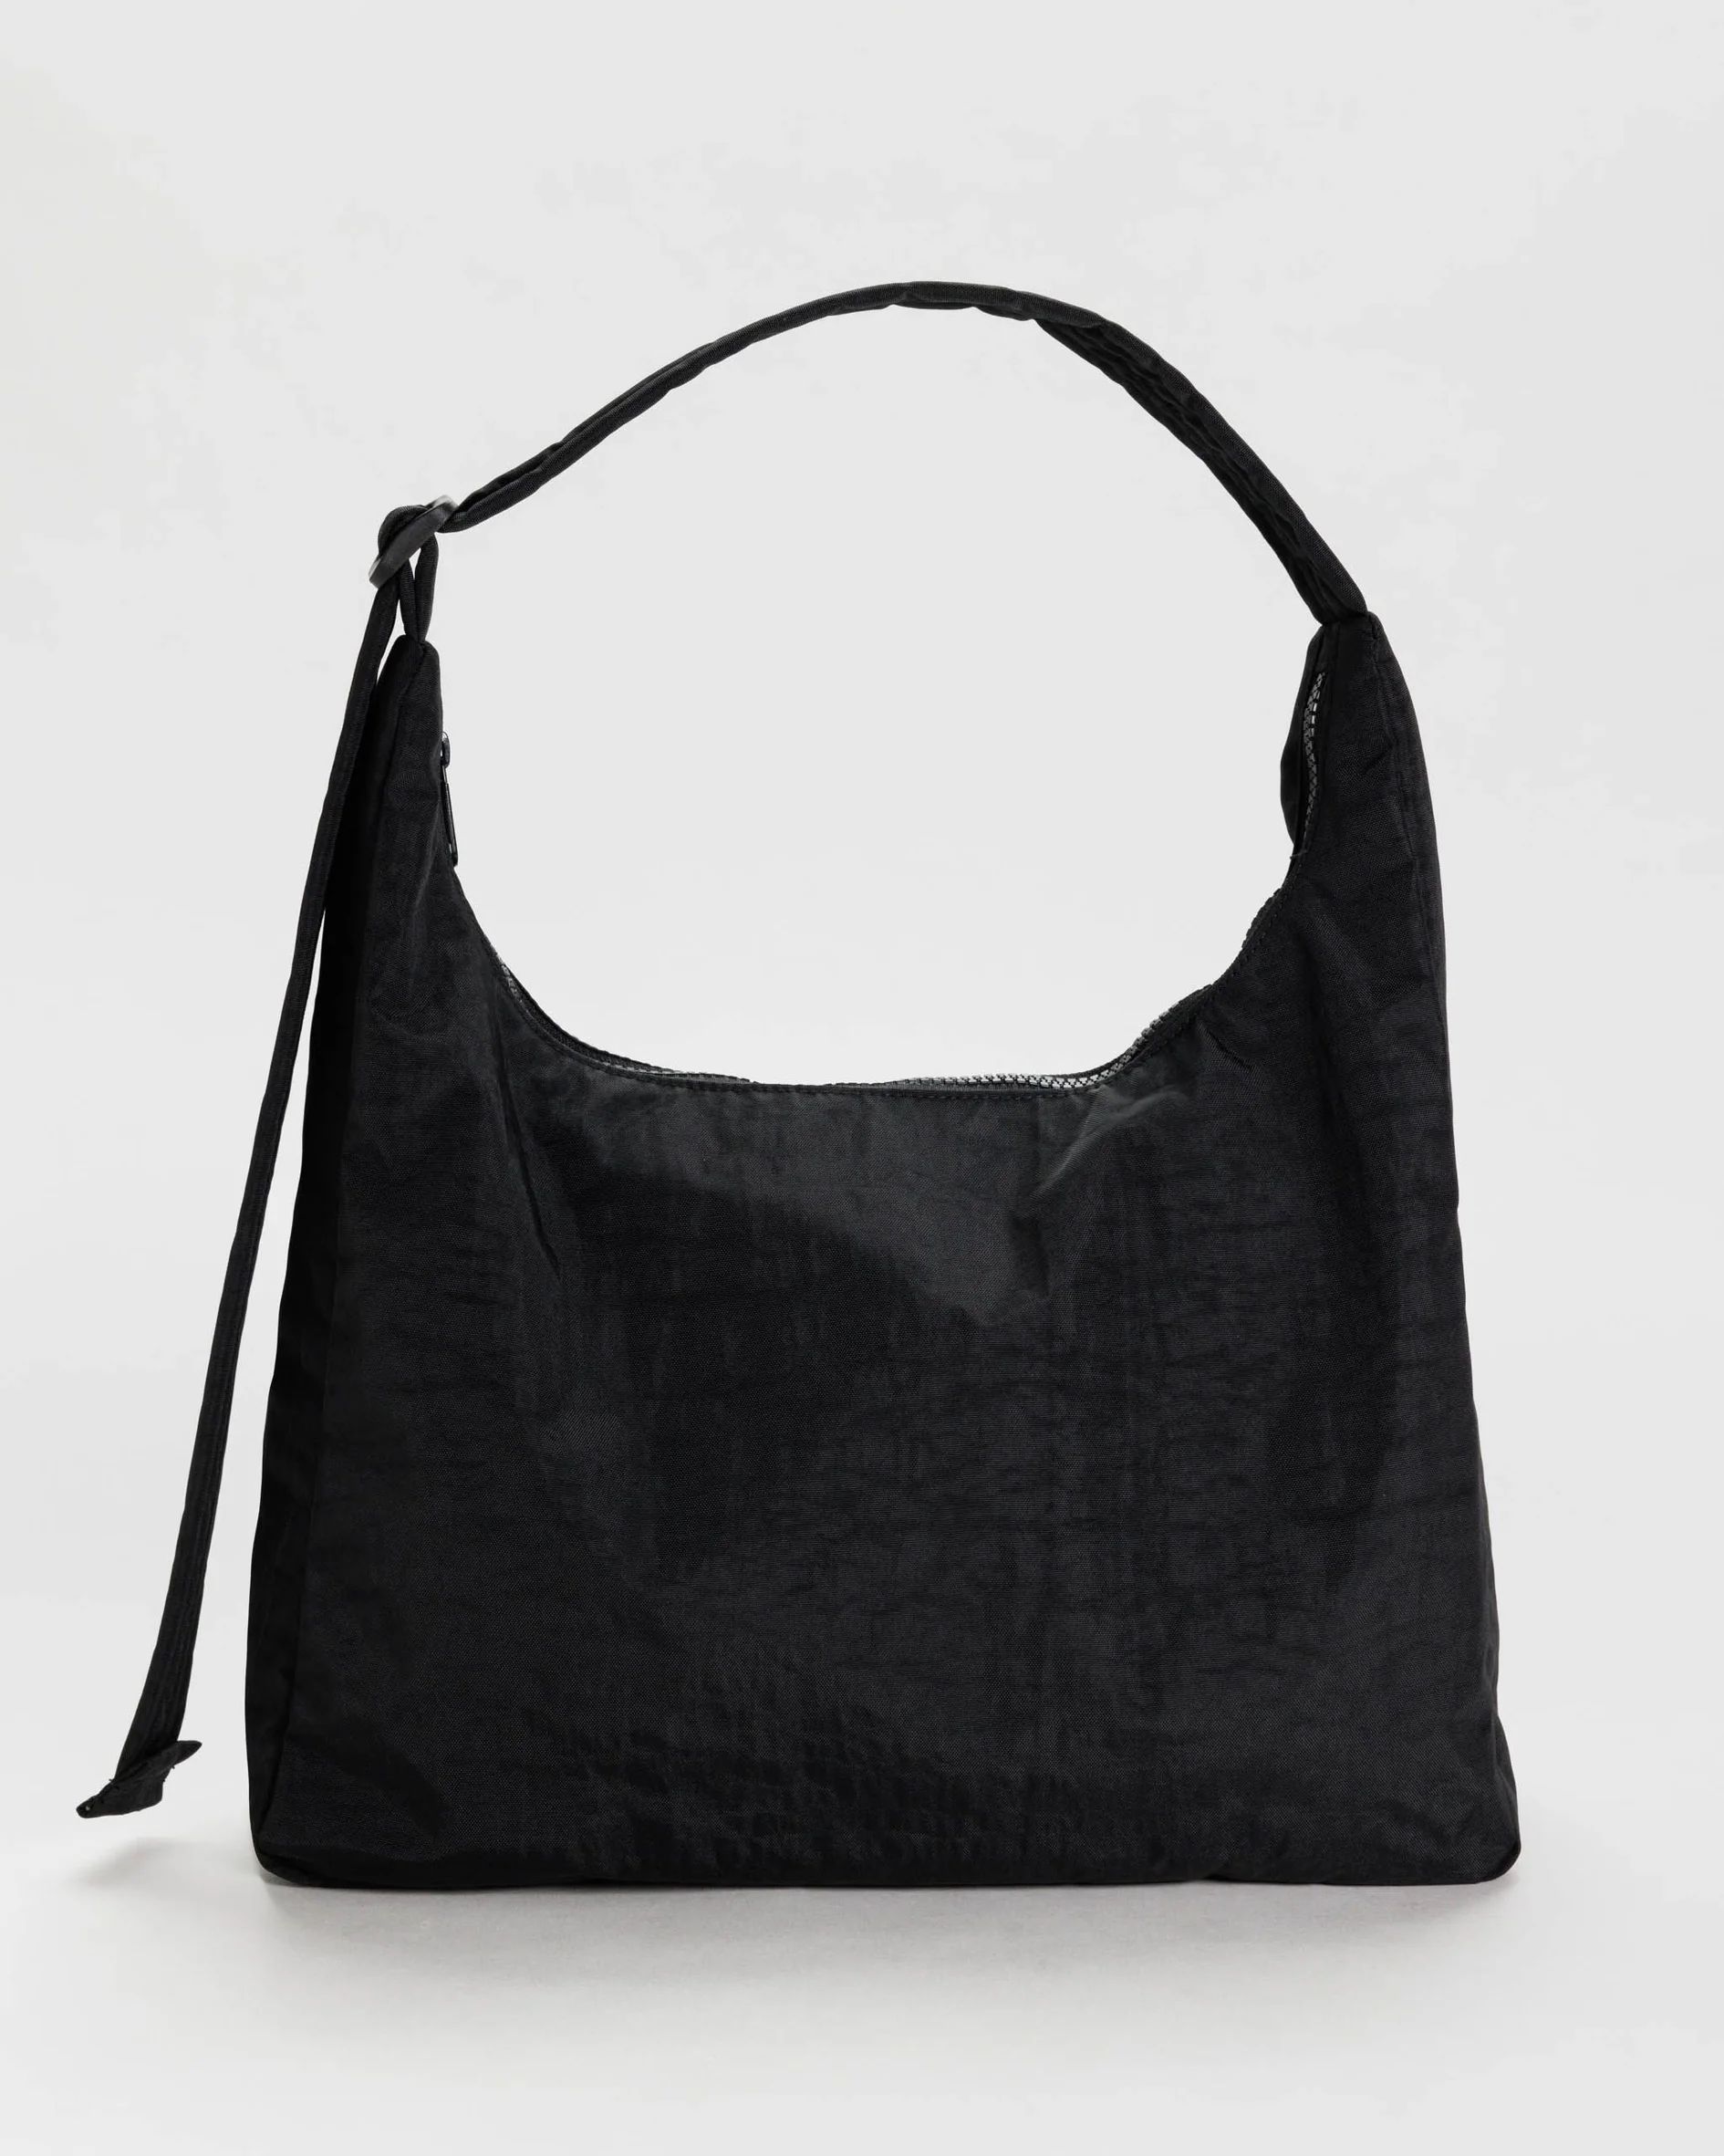 Nylon Shoulder Bag : Black - Baggu | BAGGU